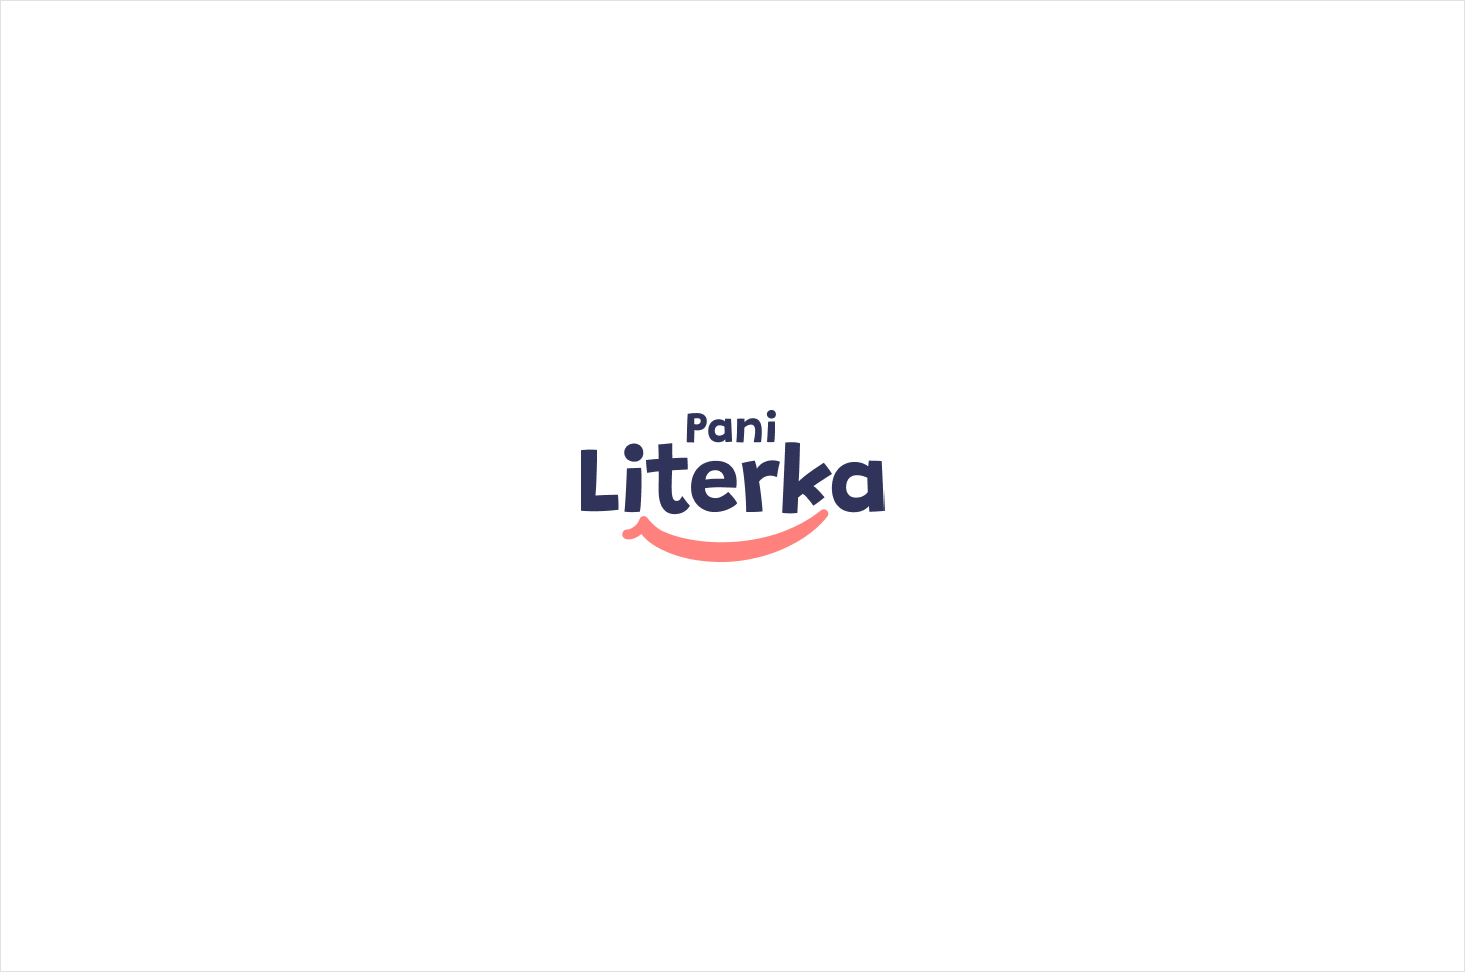 paniliterka-logo1.png